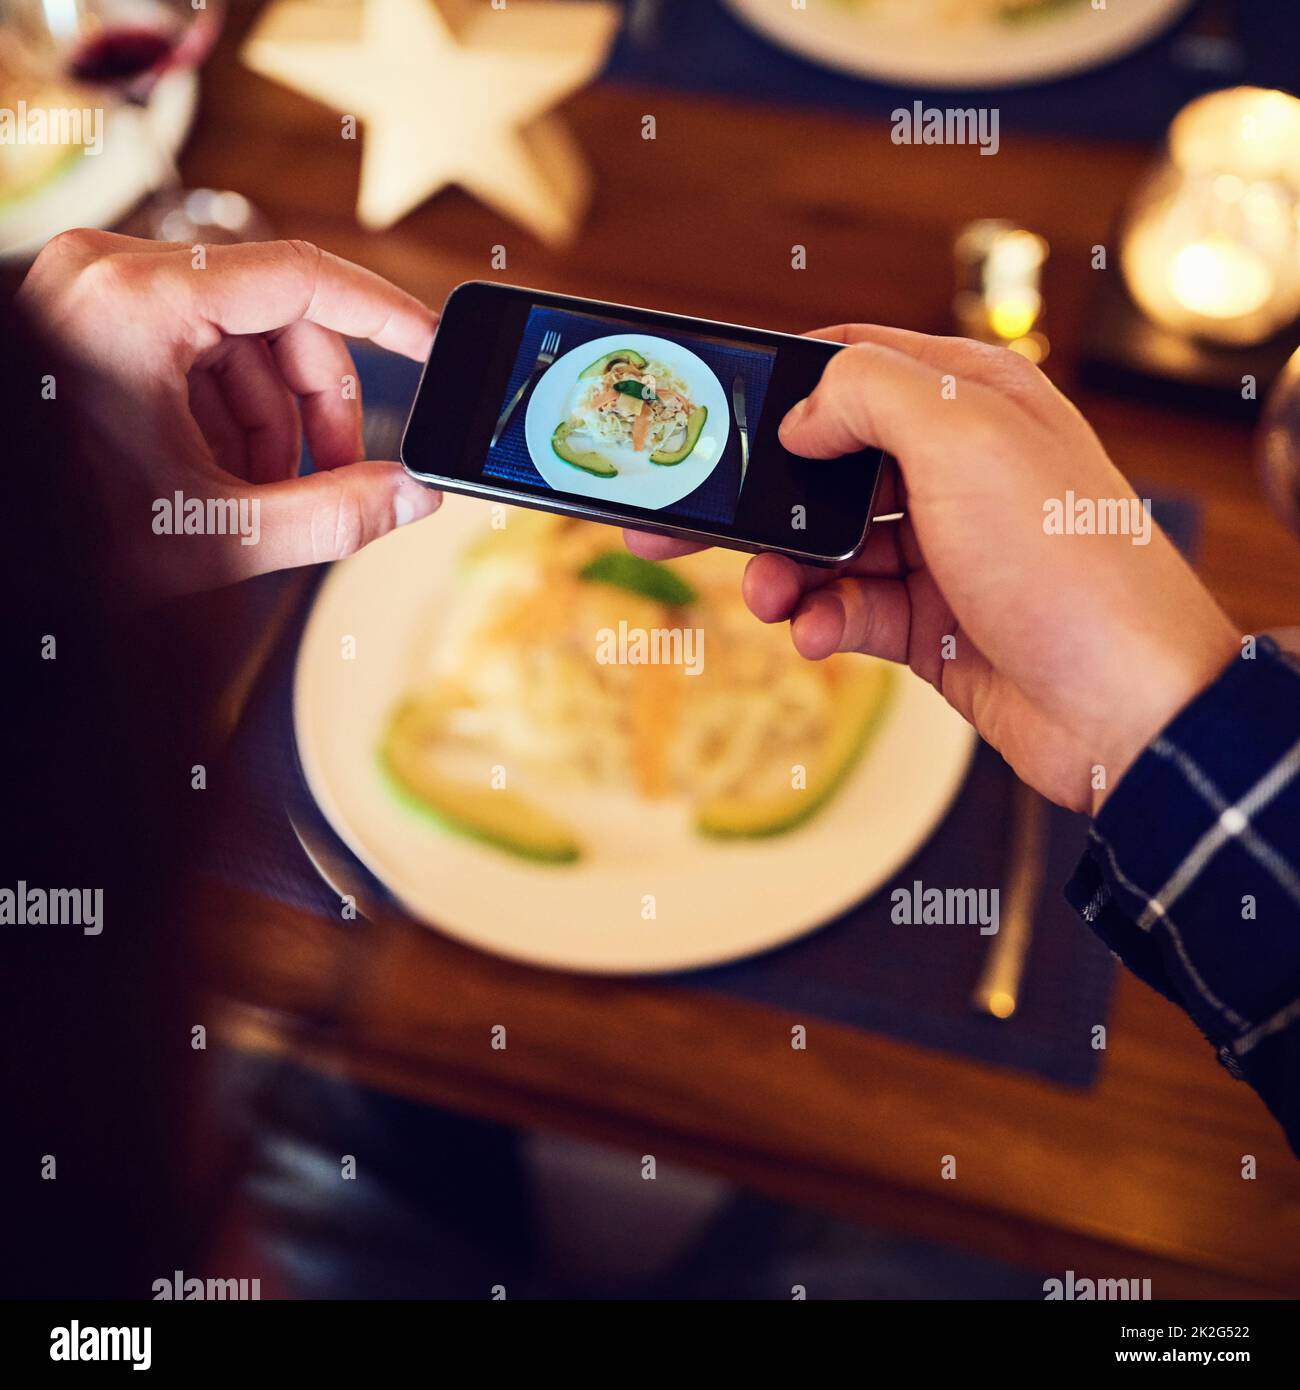 Attendez une photo rapide avant de creuser. Photo d'un homme méconnaissable prenant une photo de la nourriture avec son téléphone portable à la table de la salle à manger. Banque D'Images